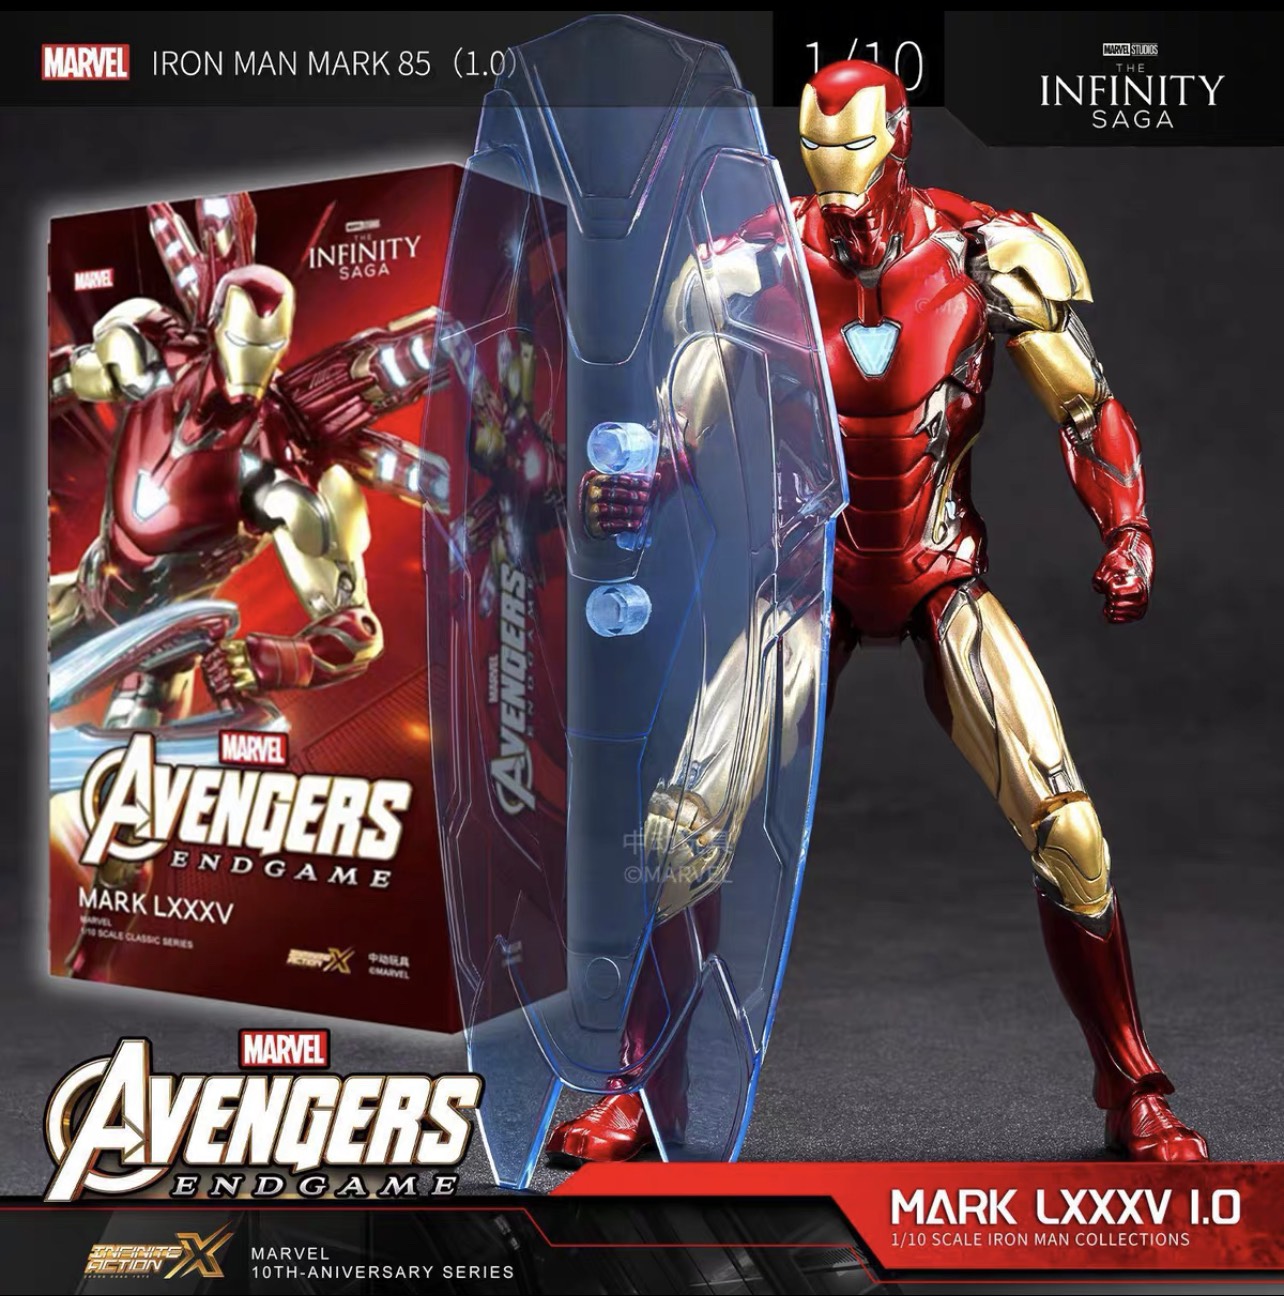 Mô hình Iron Man Avenger 3323 chính hãng giá rẻ